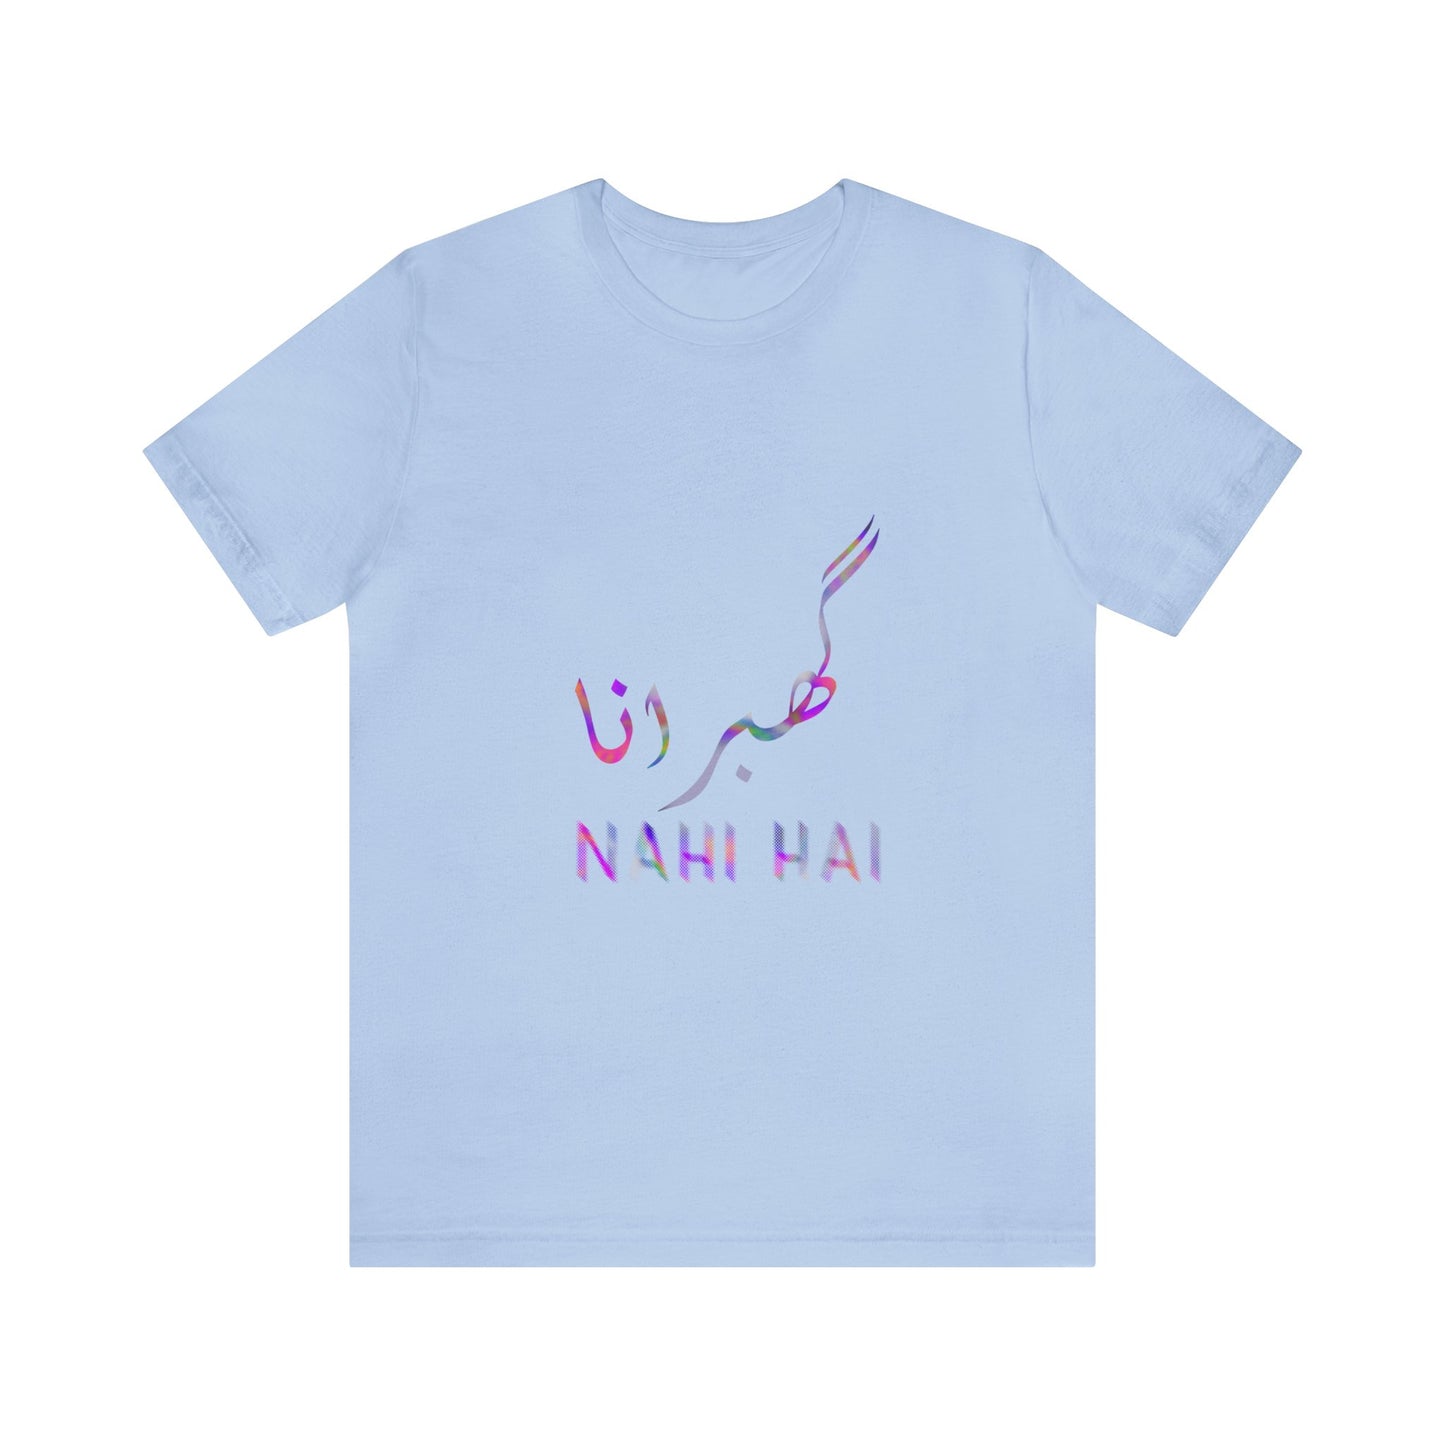 Ghabrana Nahi Hai Jersey Short Sleeve Tee